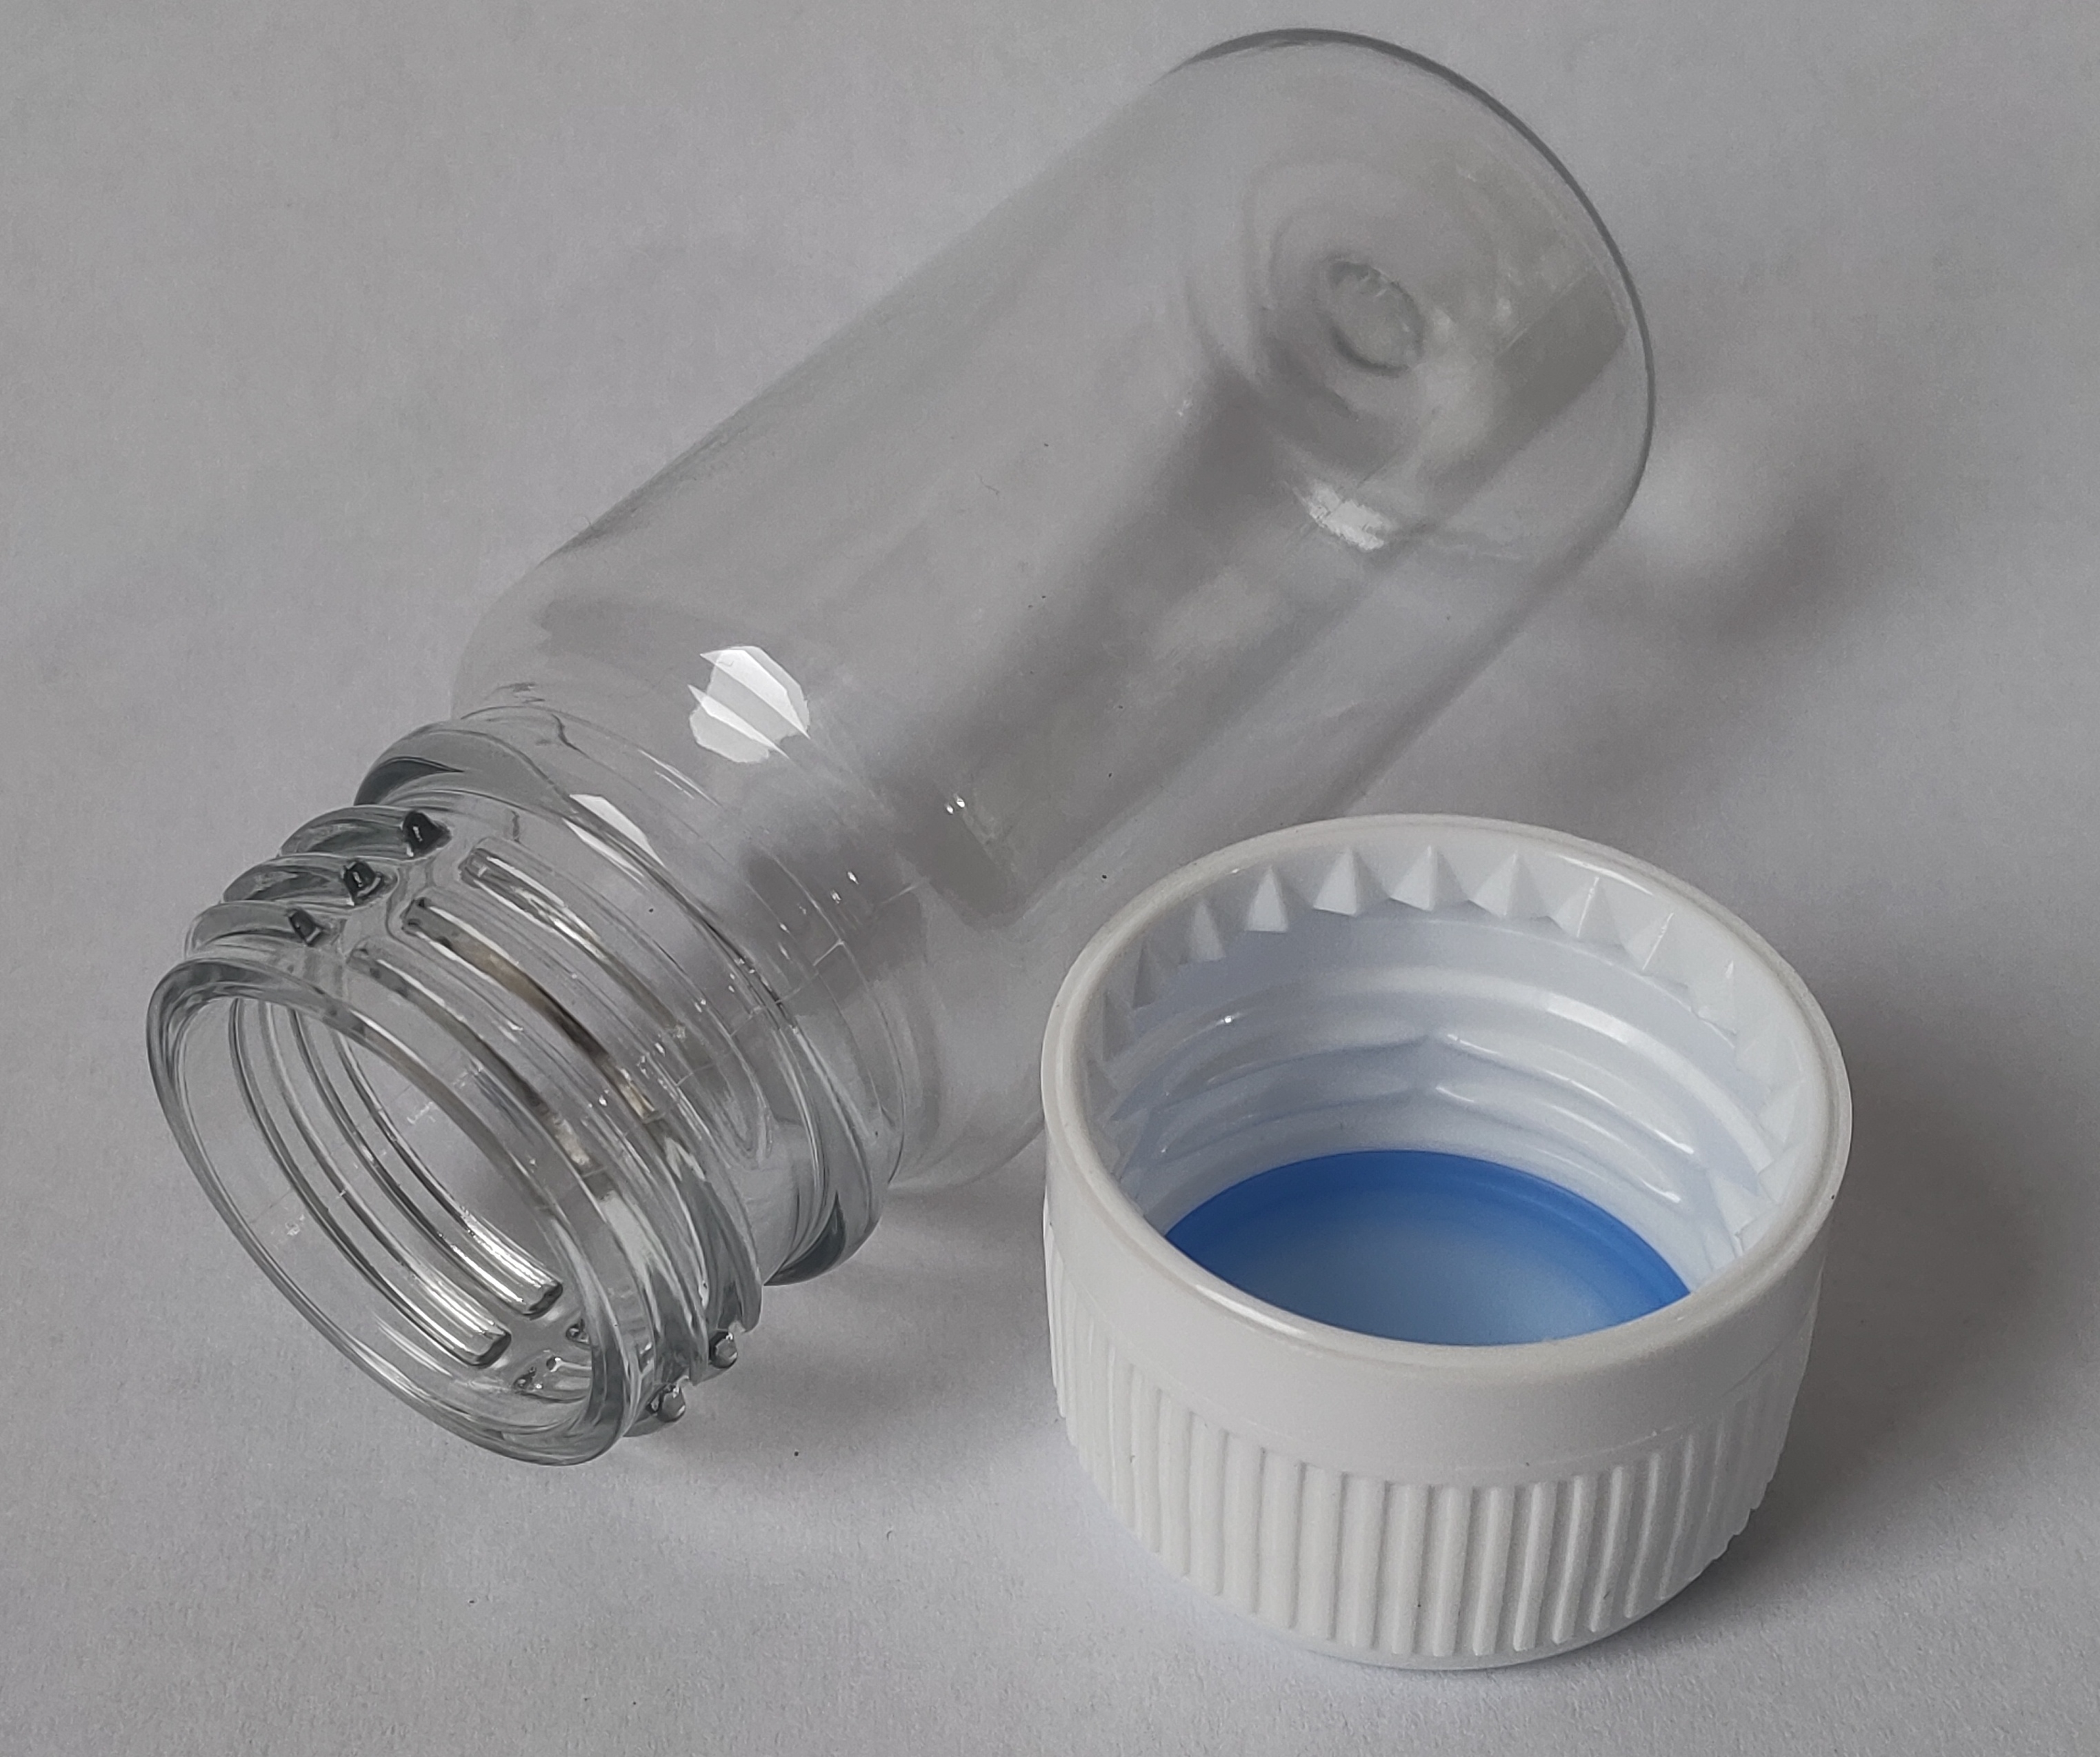 STEZA - Plastová průhledná lékovka 35 ml. Na tobolky i koření